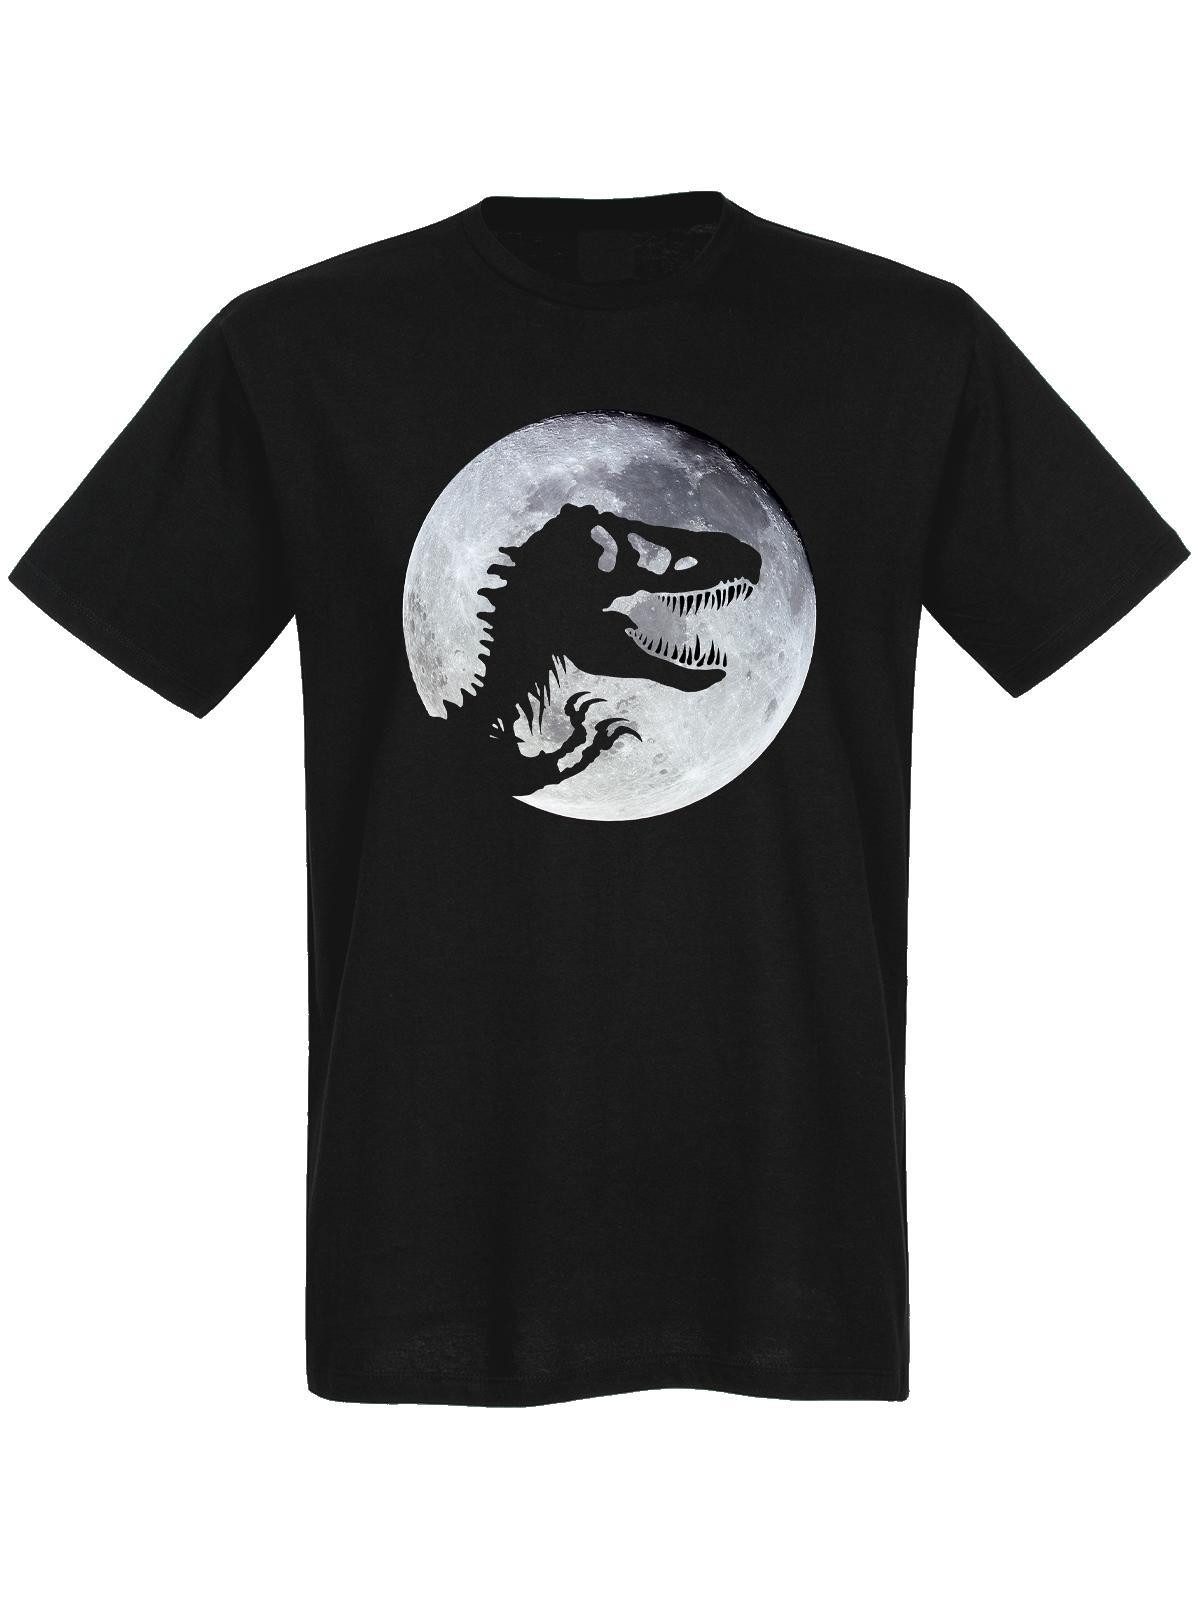 Nastrovje Potsdam T-Shirt Jurassic Park Moonlight